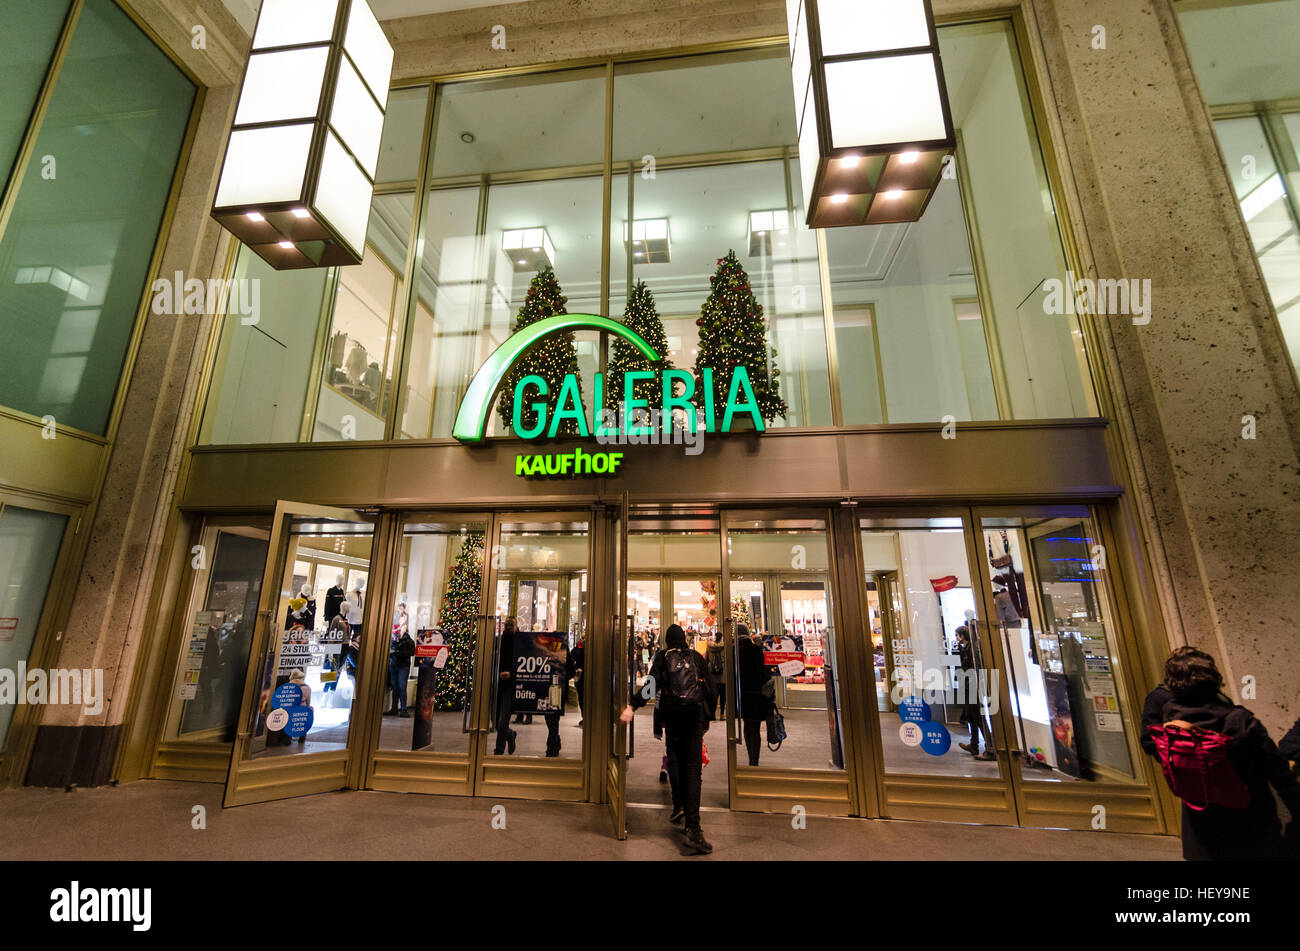 Logo et à l'extérieur entrée Galeria Kaufhof, grand magasin, boutique, détaillant. Alexanderplatz, Mitte, Berlin, Allemagne. Banque D'Images